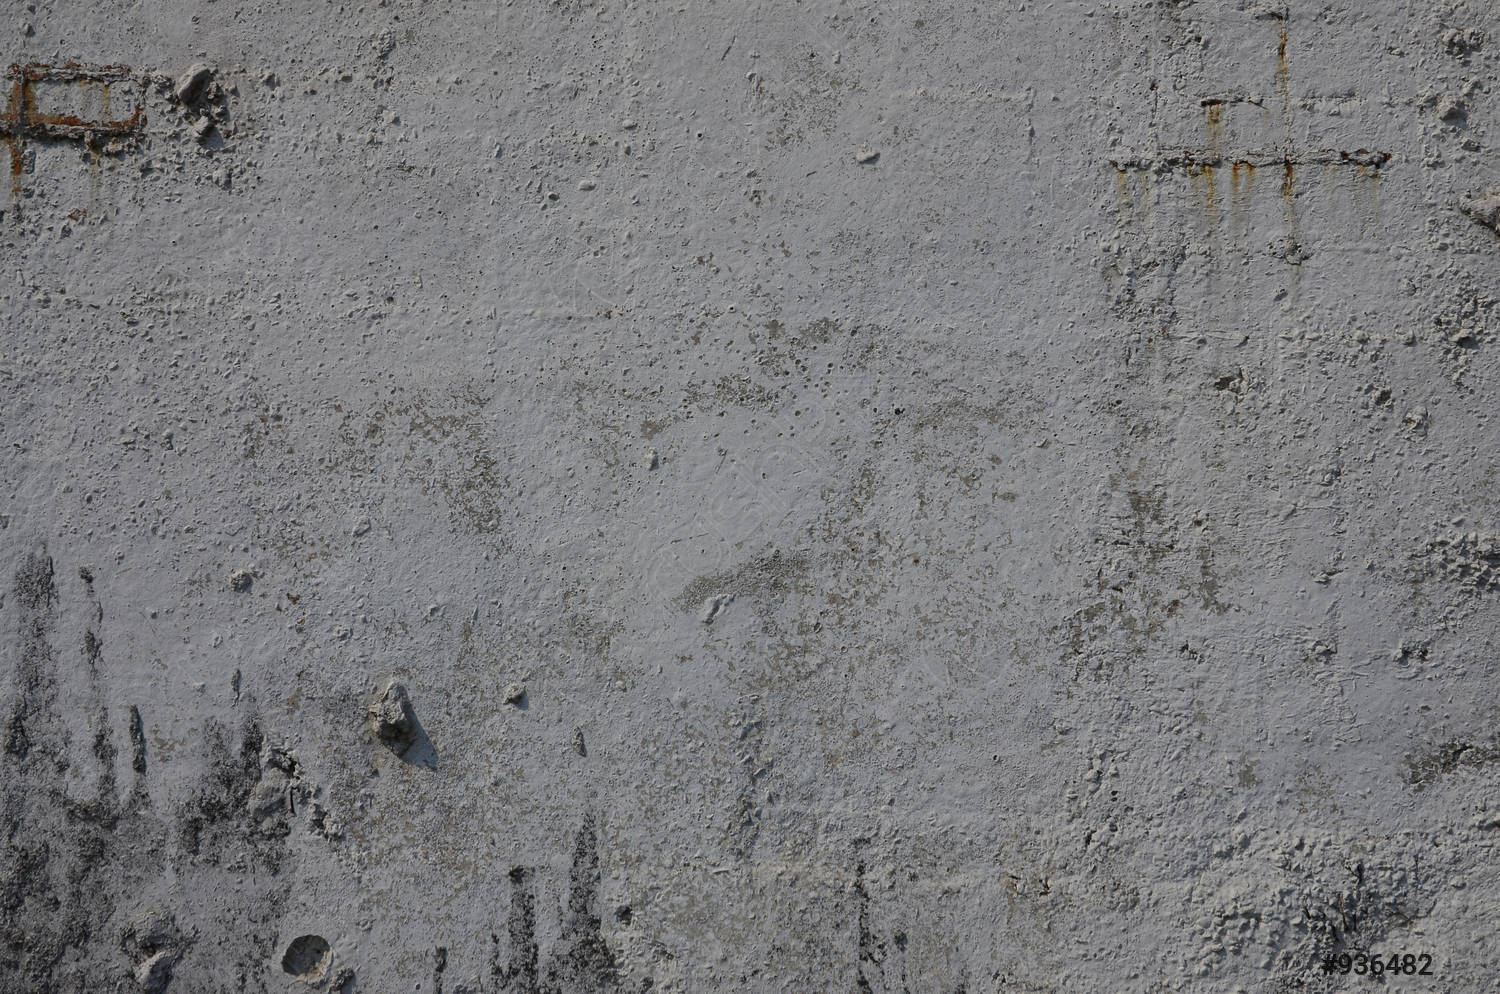  Beton Hintergrundbild 1500x994. Textur der alten Betonwand in grauem Hintergrundbild eines Betonproduktes vorrätig 936482